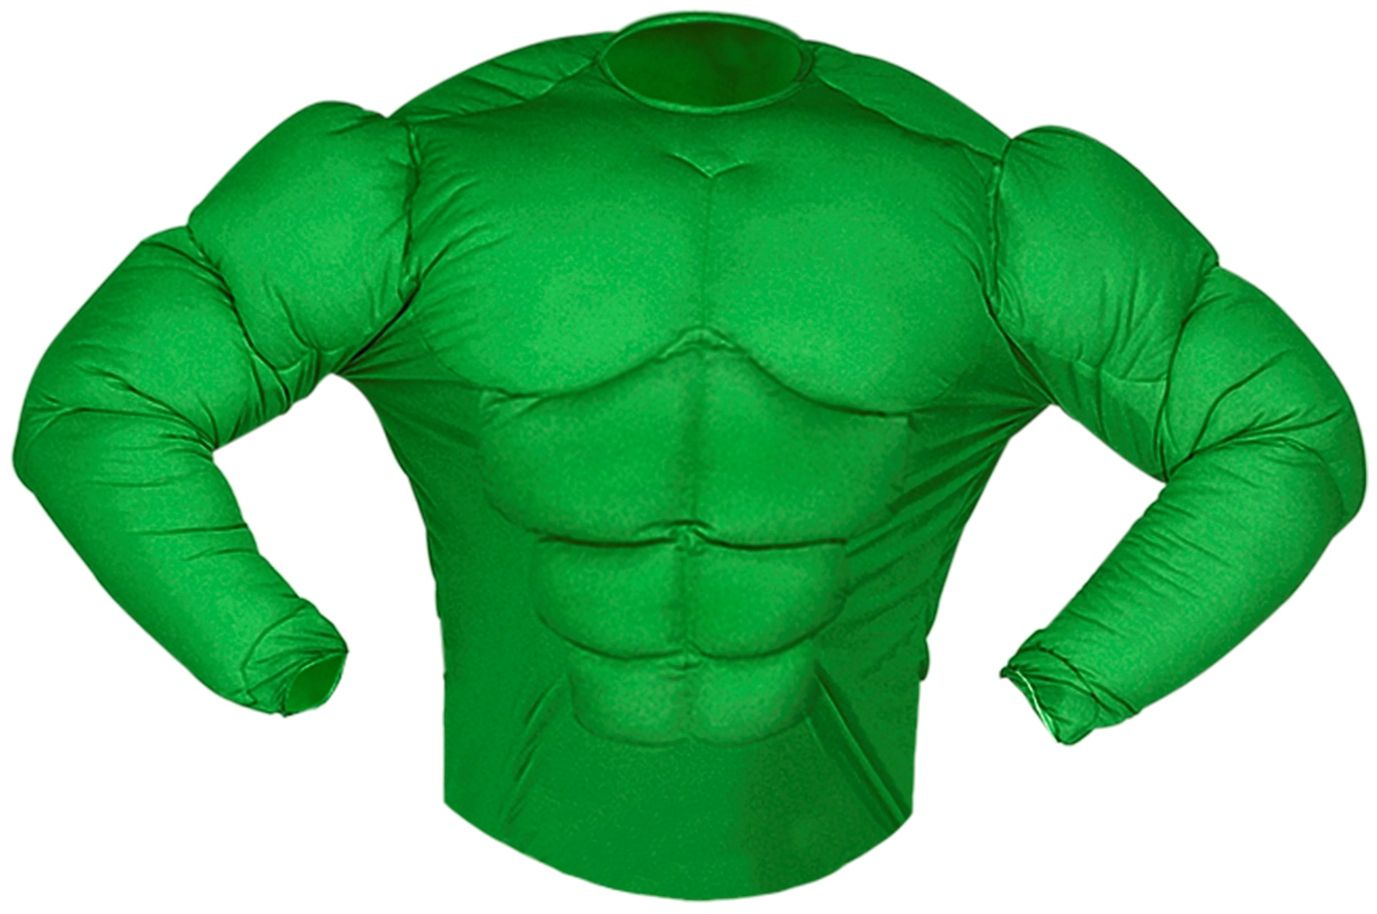 Hulk spierenshirt kind